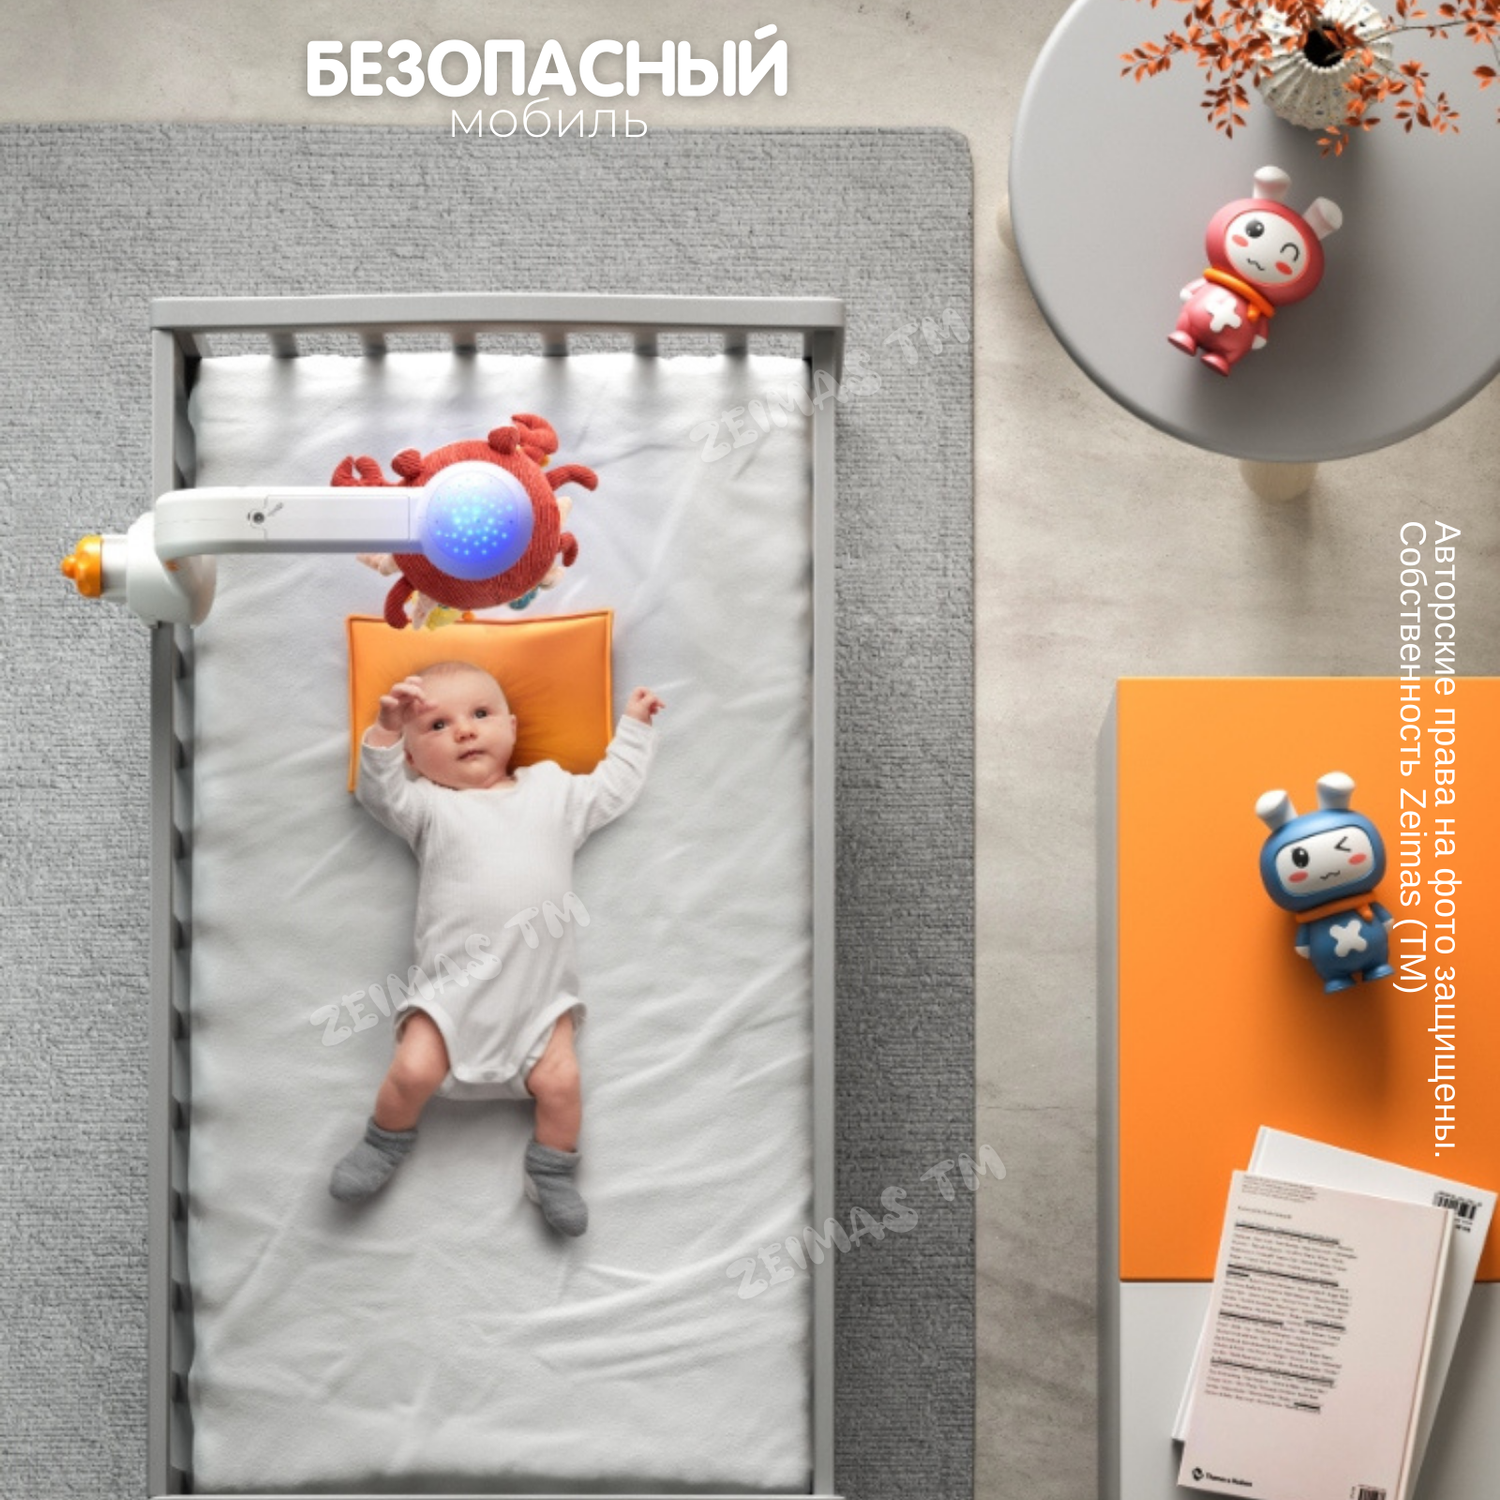 Музыкальный мобиль в кроватку Zeimas с bluetooth регулировкой громкости и проектором звездного неба - фото 8